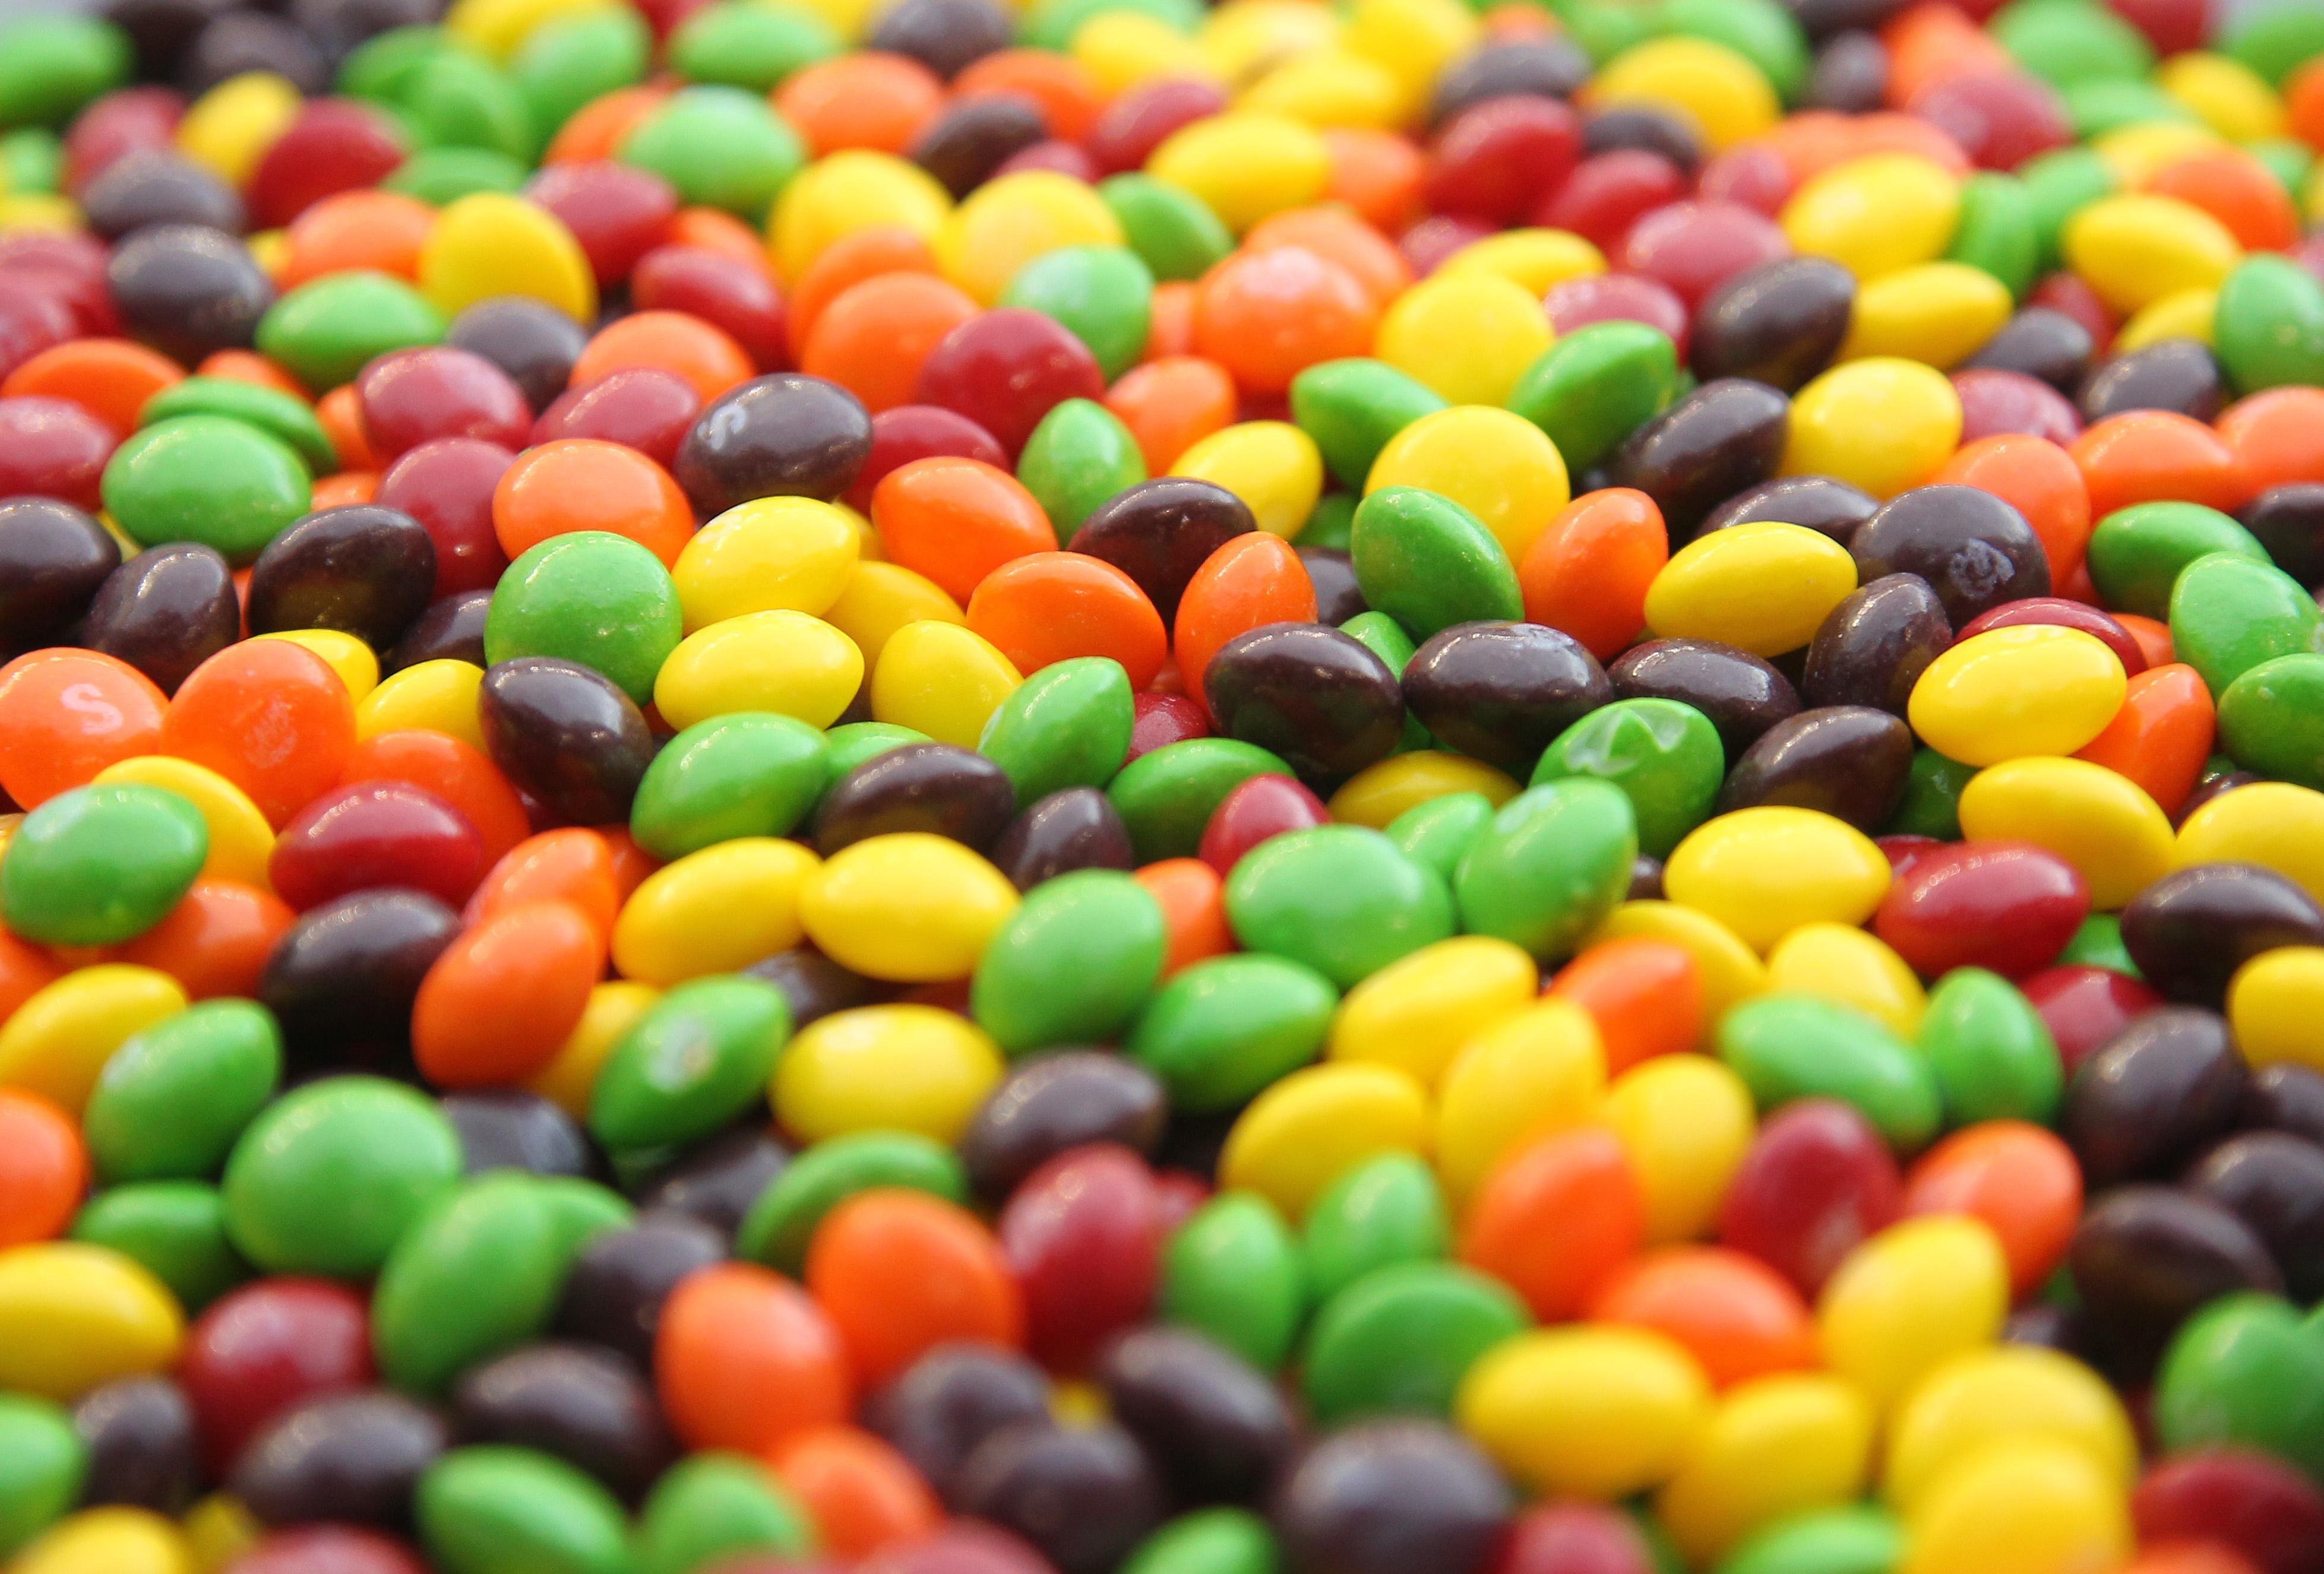 Varieties of Starburst, Skittles and Life Savers gummies recalled